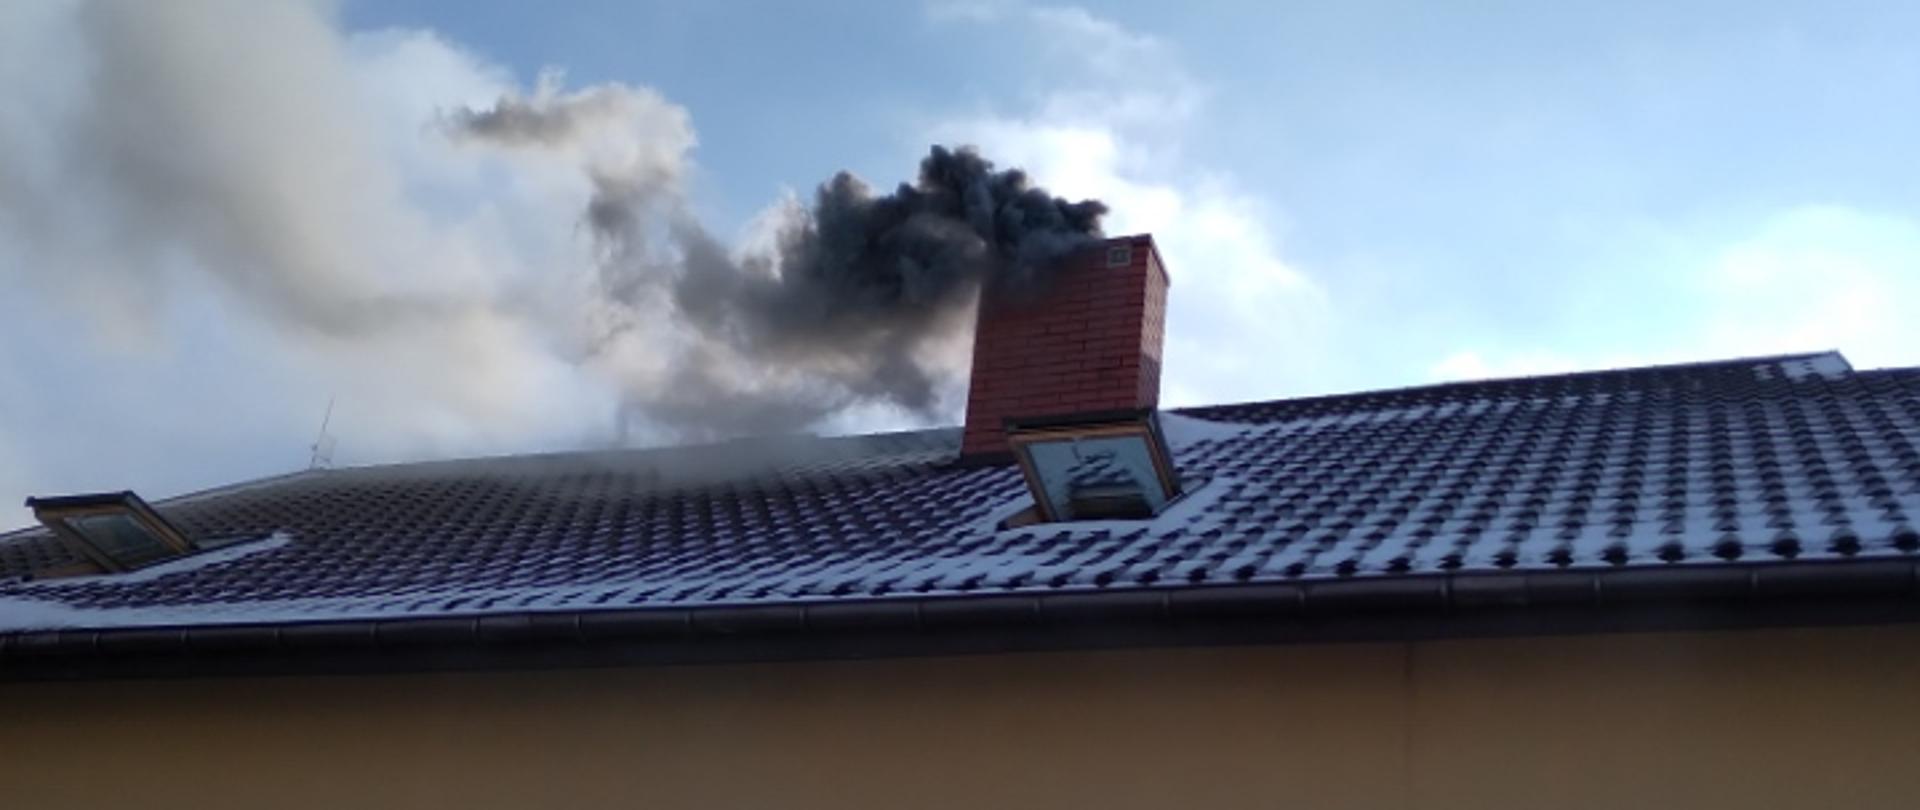 Zdjęcie przedstawia szary, gęsty dym wydobywający się z komina. Przed budynkiem w którym doszło do pożaru stoi dwóch strażaków.